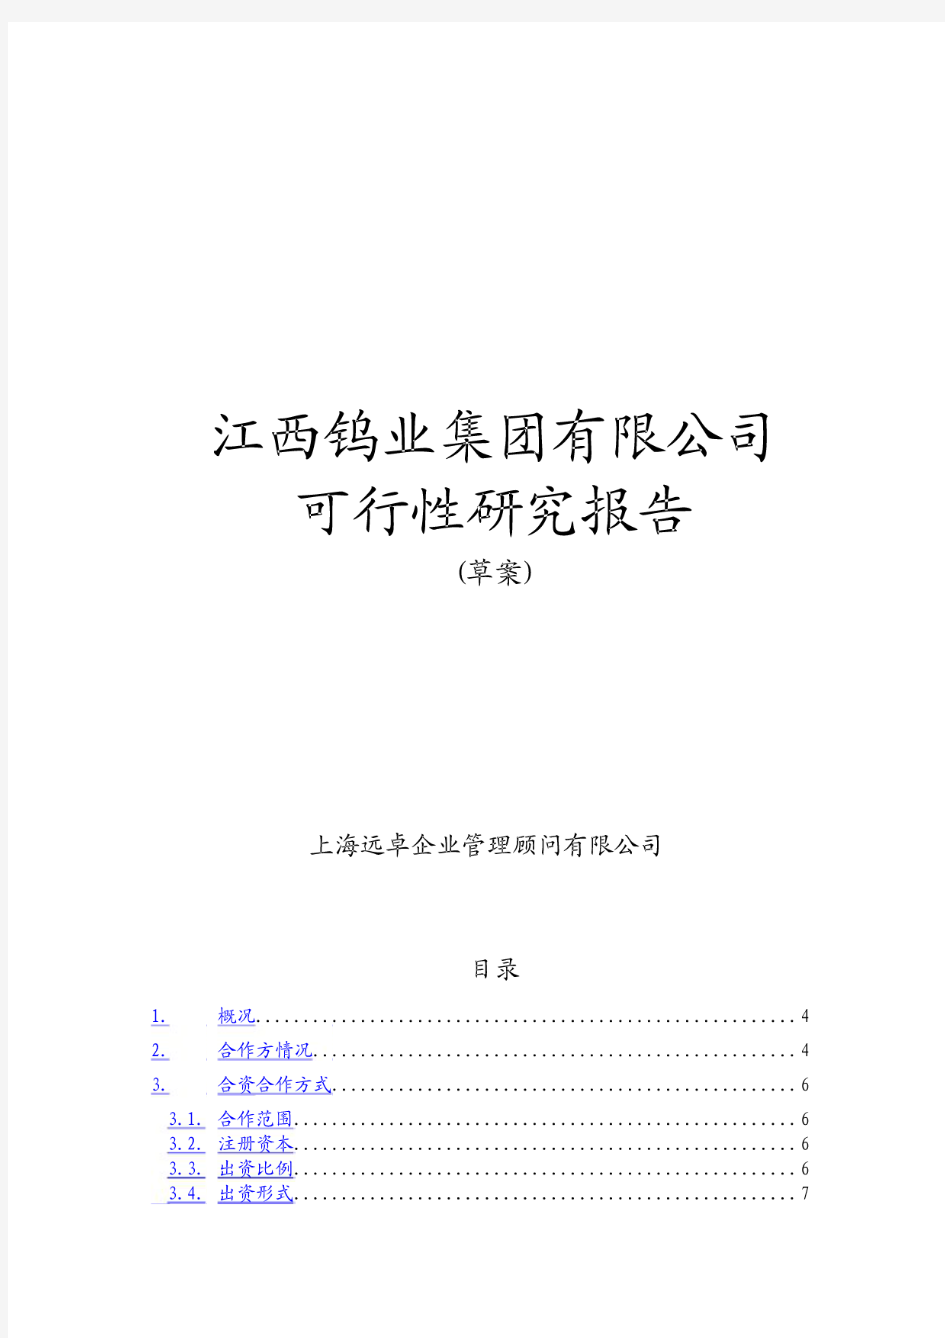 江西钨业集团有限公司可行性研究报告(草案)